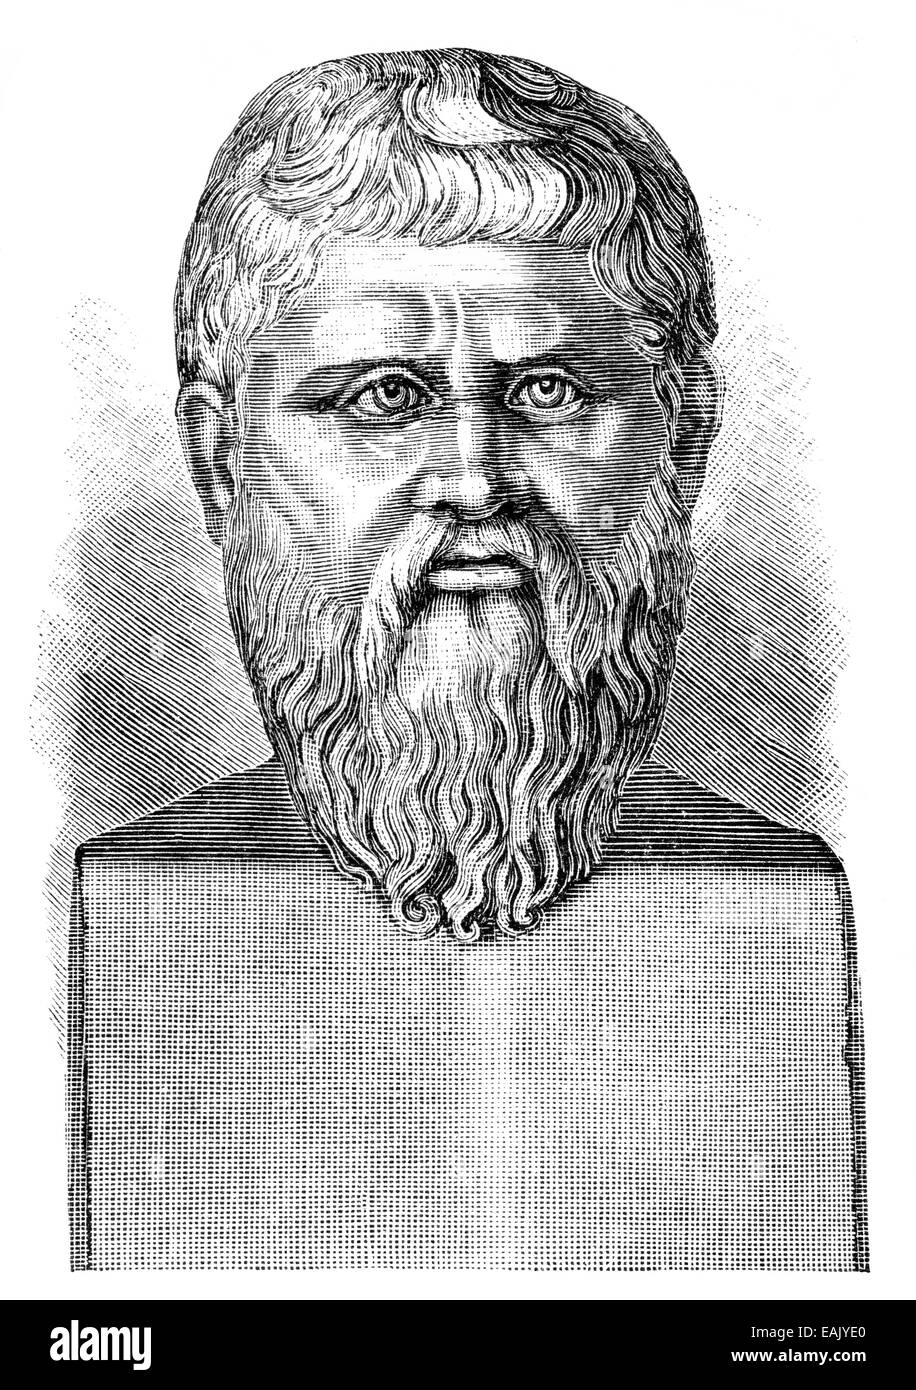 Büste von Platon oder Platon 428-348 v. Chr., eine alte griechische Philosoph, Büste von Platon Oder Plato, 428 v. Chr. - 348 v. Chr., Stockfoto